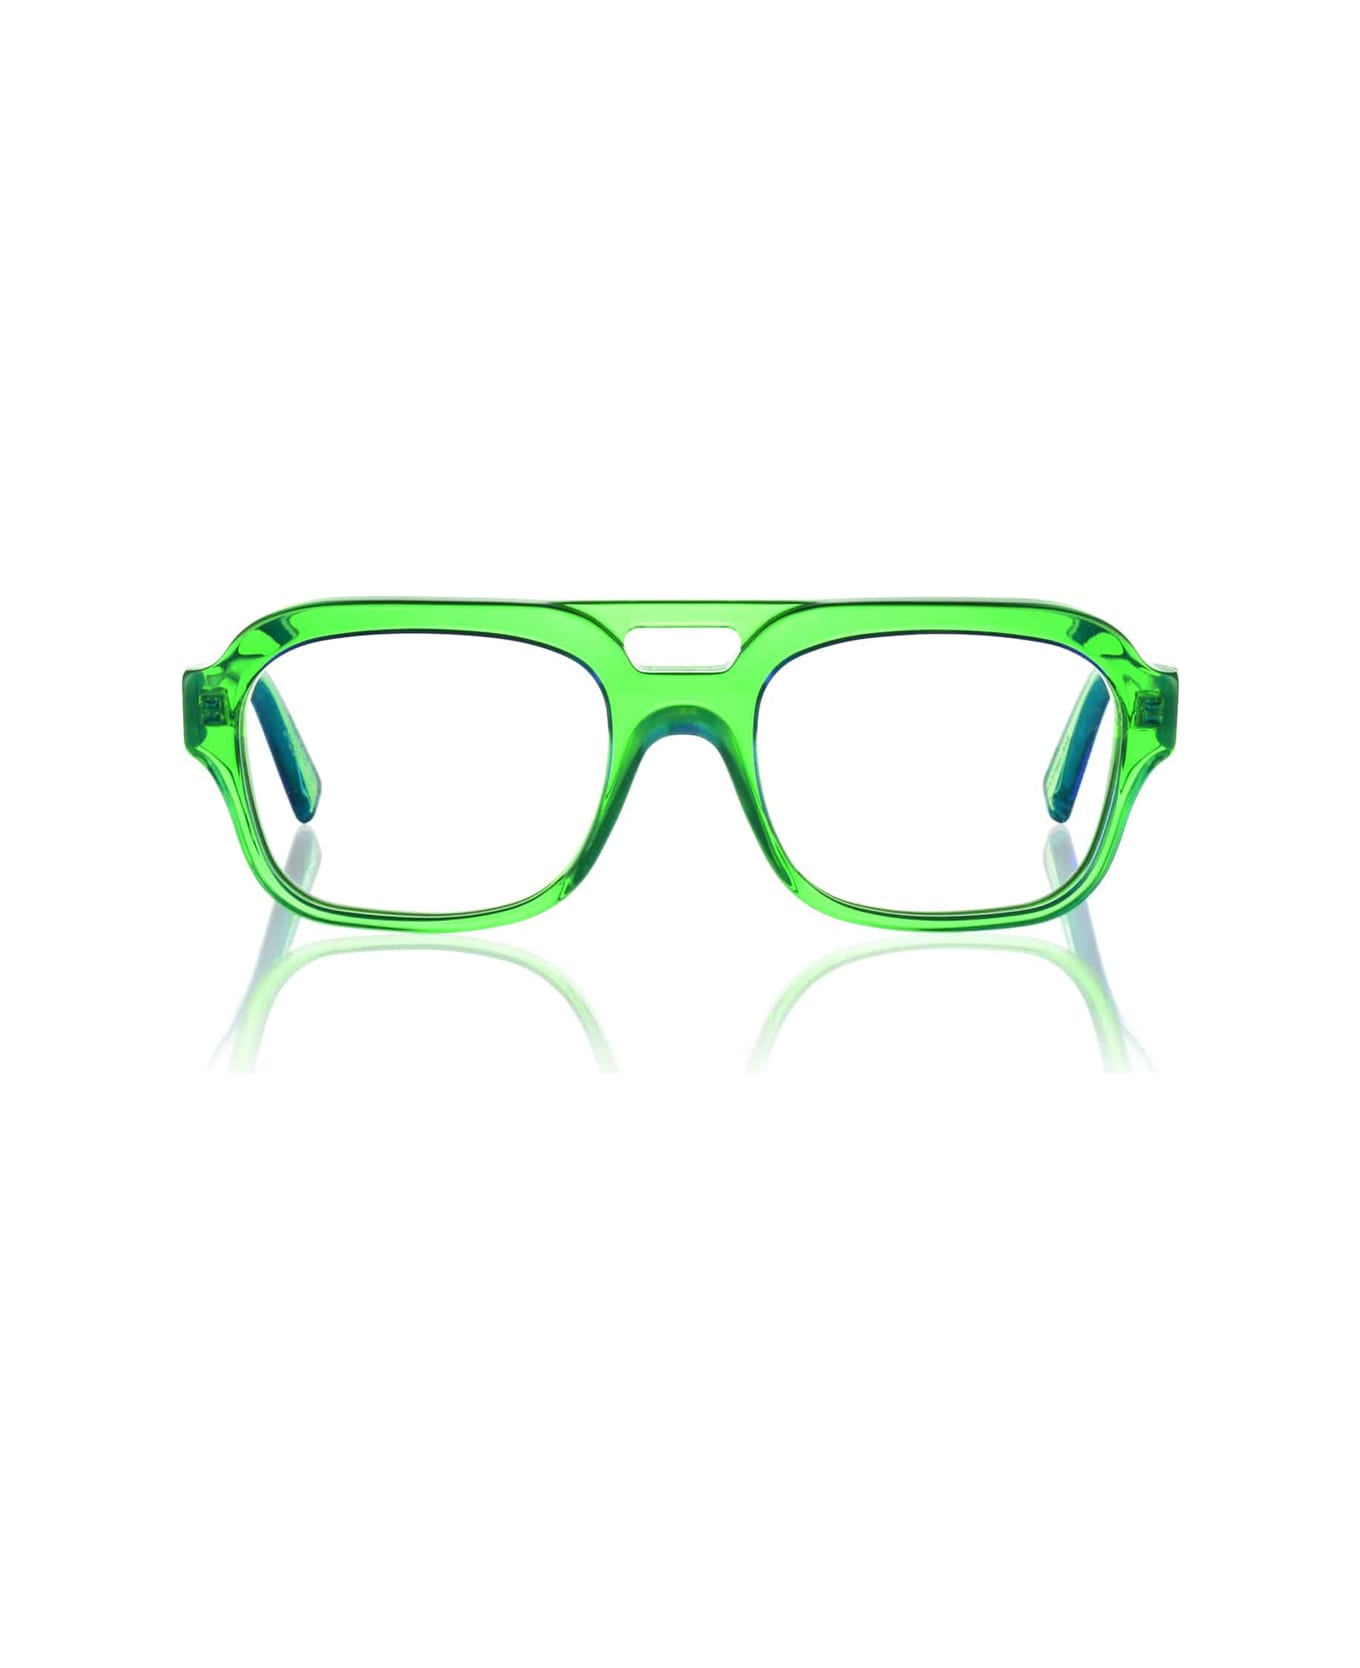 Kirk & Kirk Finn K18 Apple Glasses - Verde アイウェア